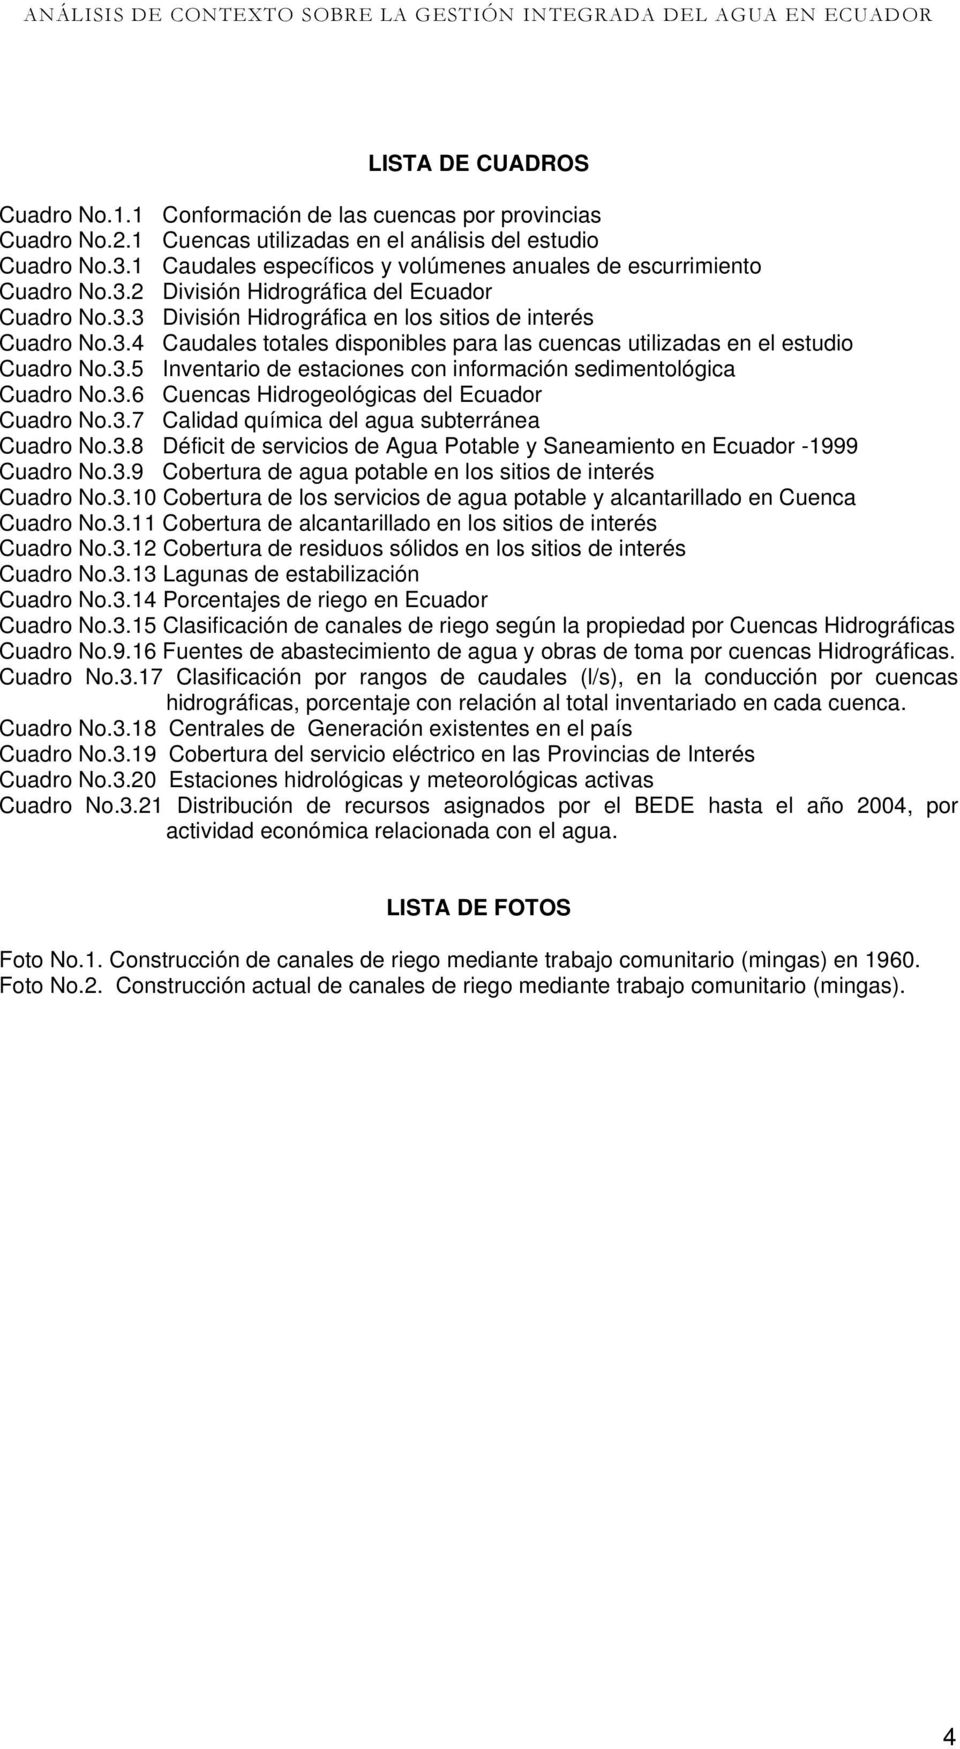 3.5 Inventario de estaciones con información sedimentológica Cuadro No.3.6 Cuencas Hidrogeológicas del Ecuador Cuadro No.3.7 Calidad química del agua subterránea Cuadro No.3.8 Déficit de servicios de Agua Potable y Saneamiento en Ecuador -1999 Cuadro No.